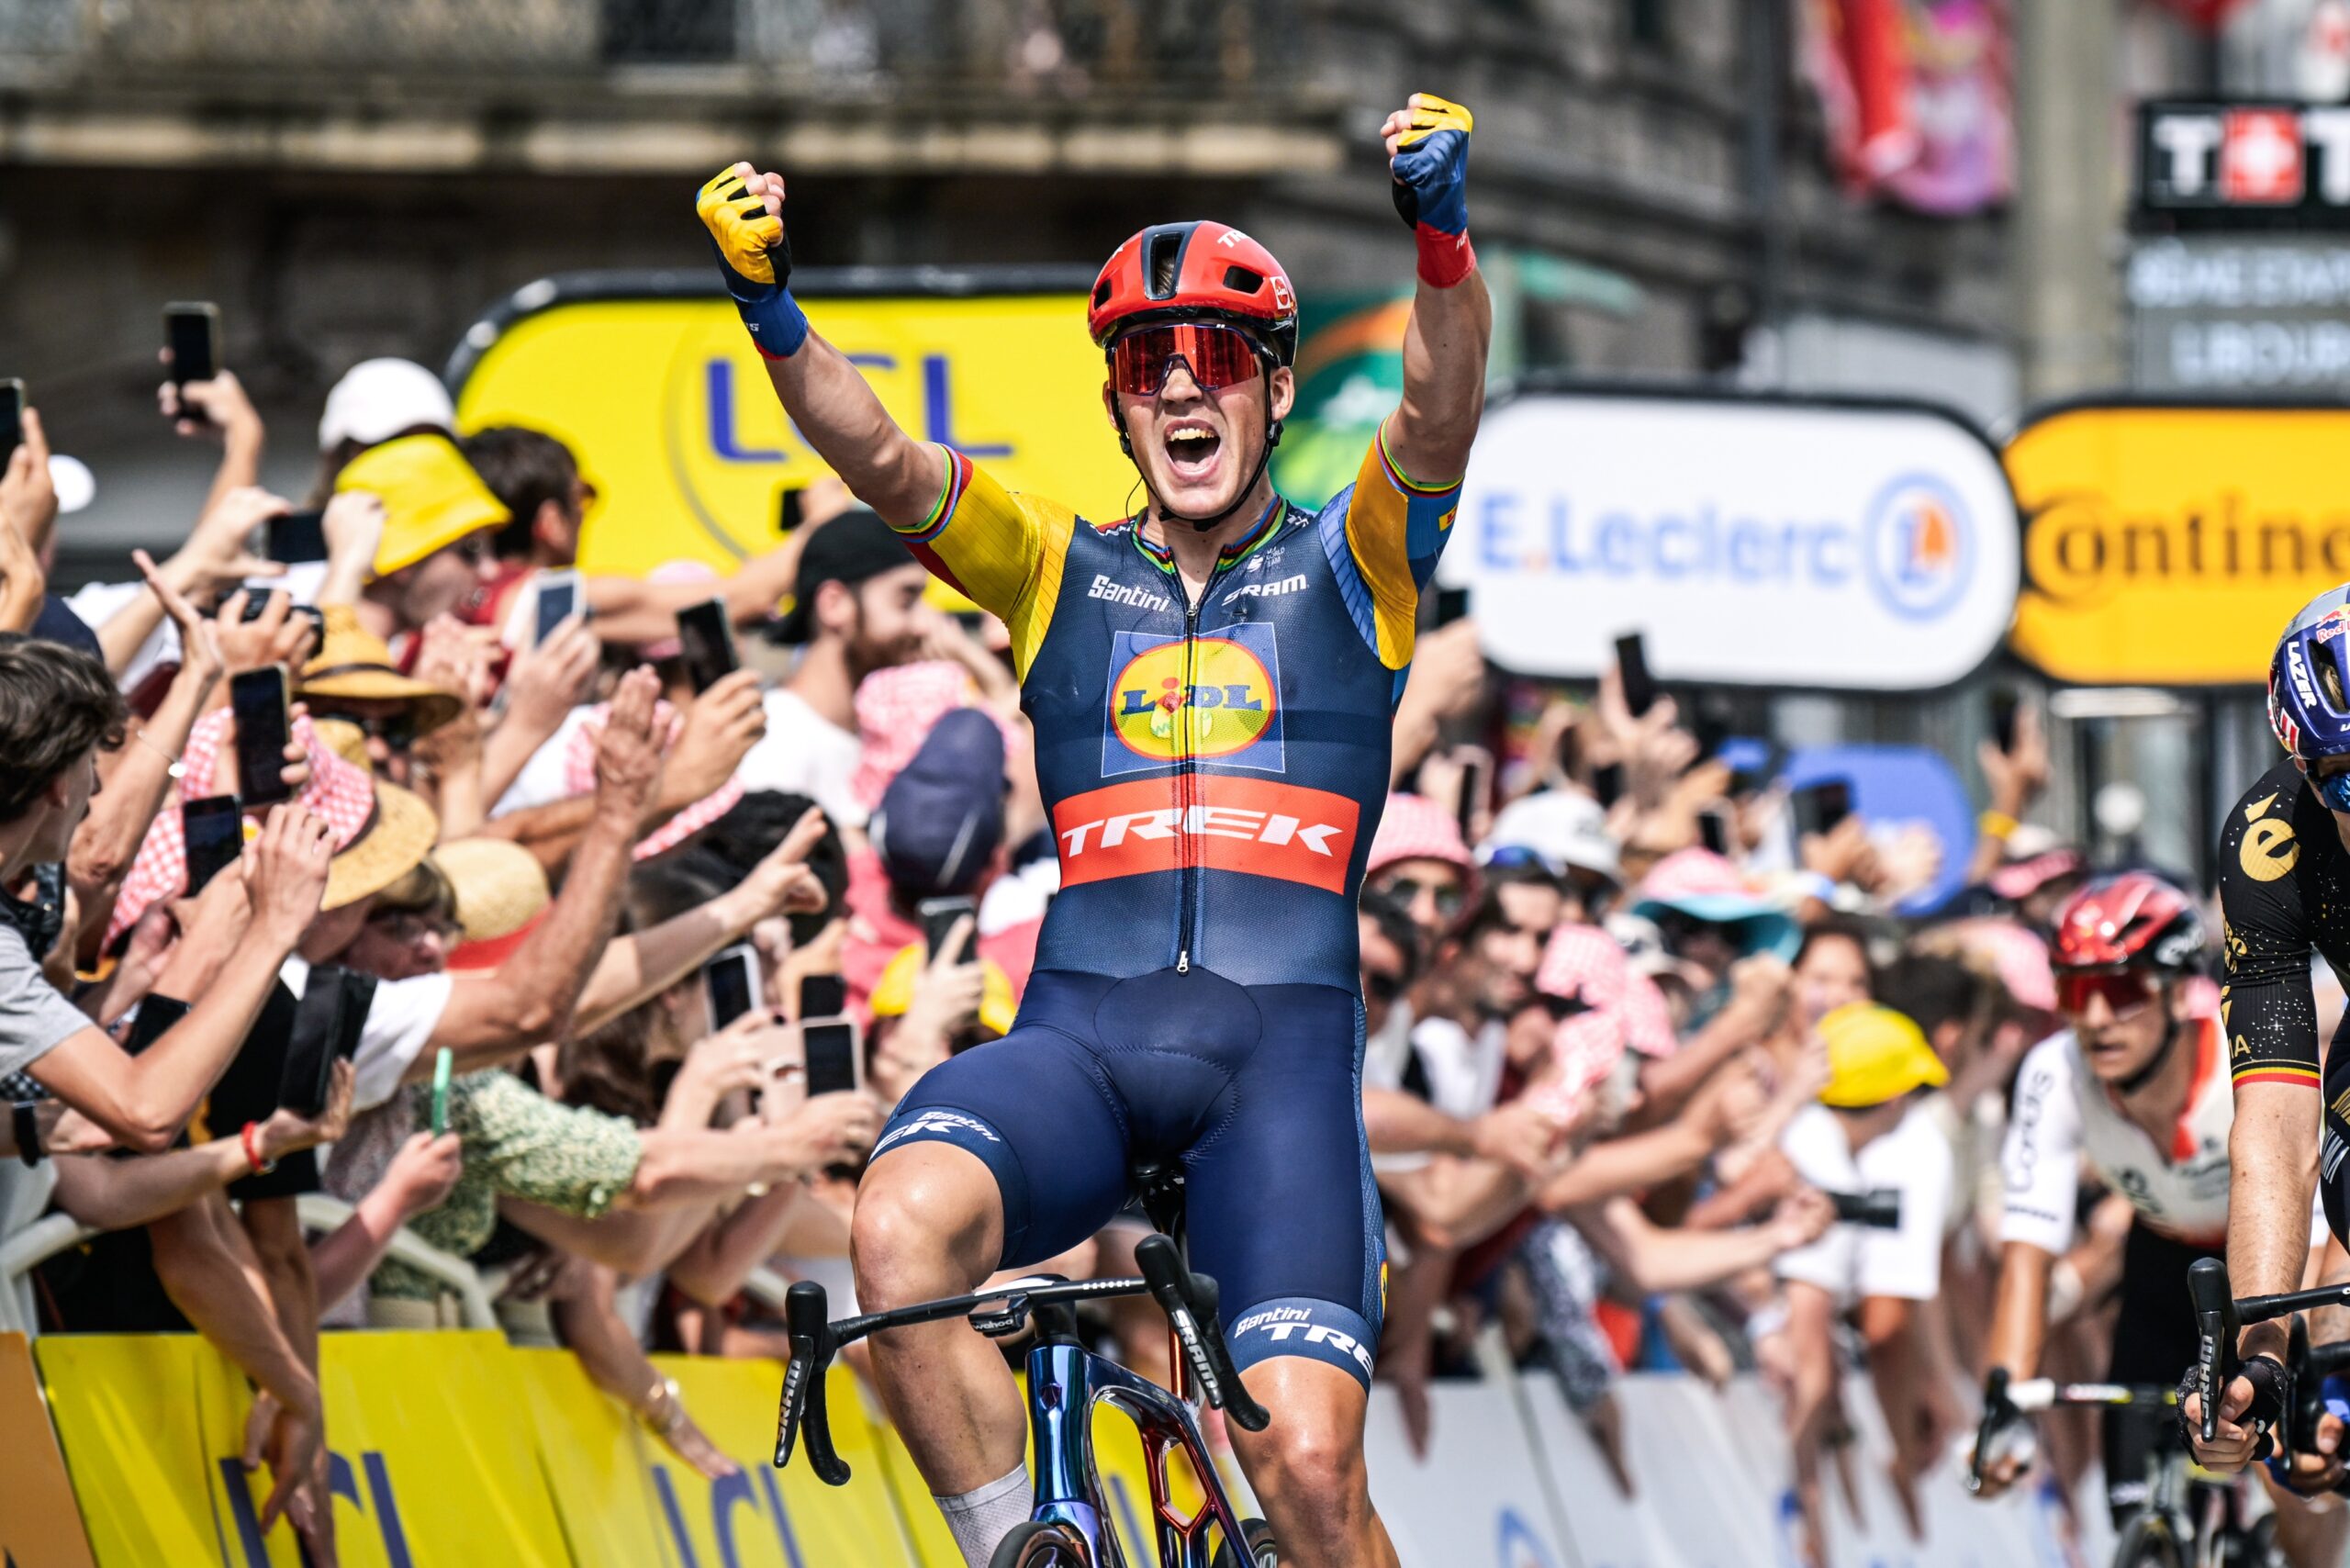 Fonte immagine: Twitter ufficiale Tour de France